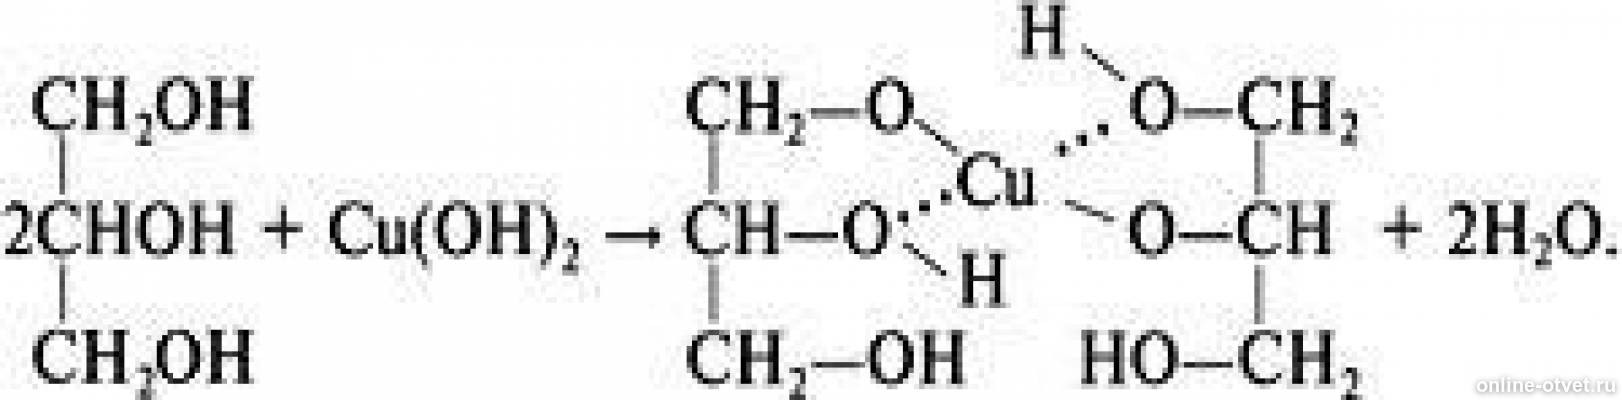 Глицерин реагирует с гидроксидом меди 2. Глицерин и оксид меди. Глицерин и оксид меди 2. Уравнение реакции глицерина с гидроксидом меди 2. Глицерин плюс оксид меди 2.